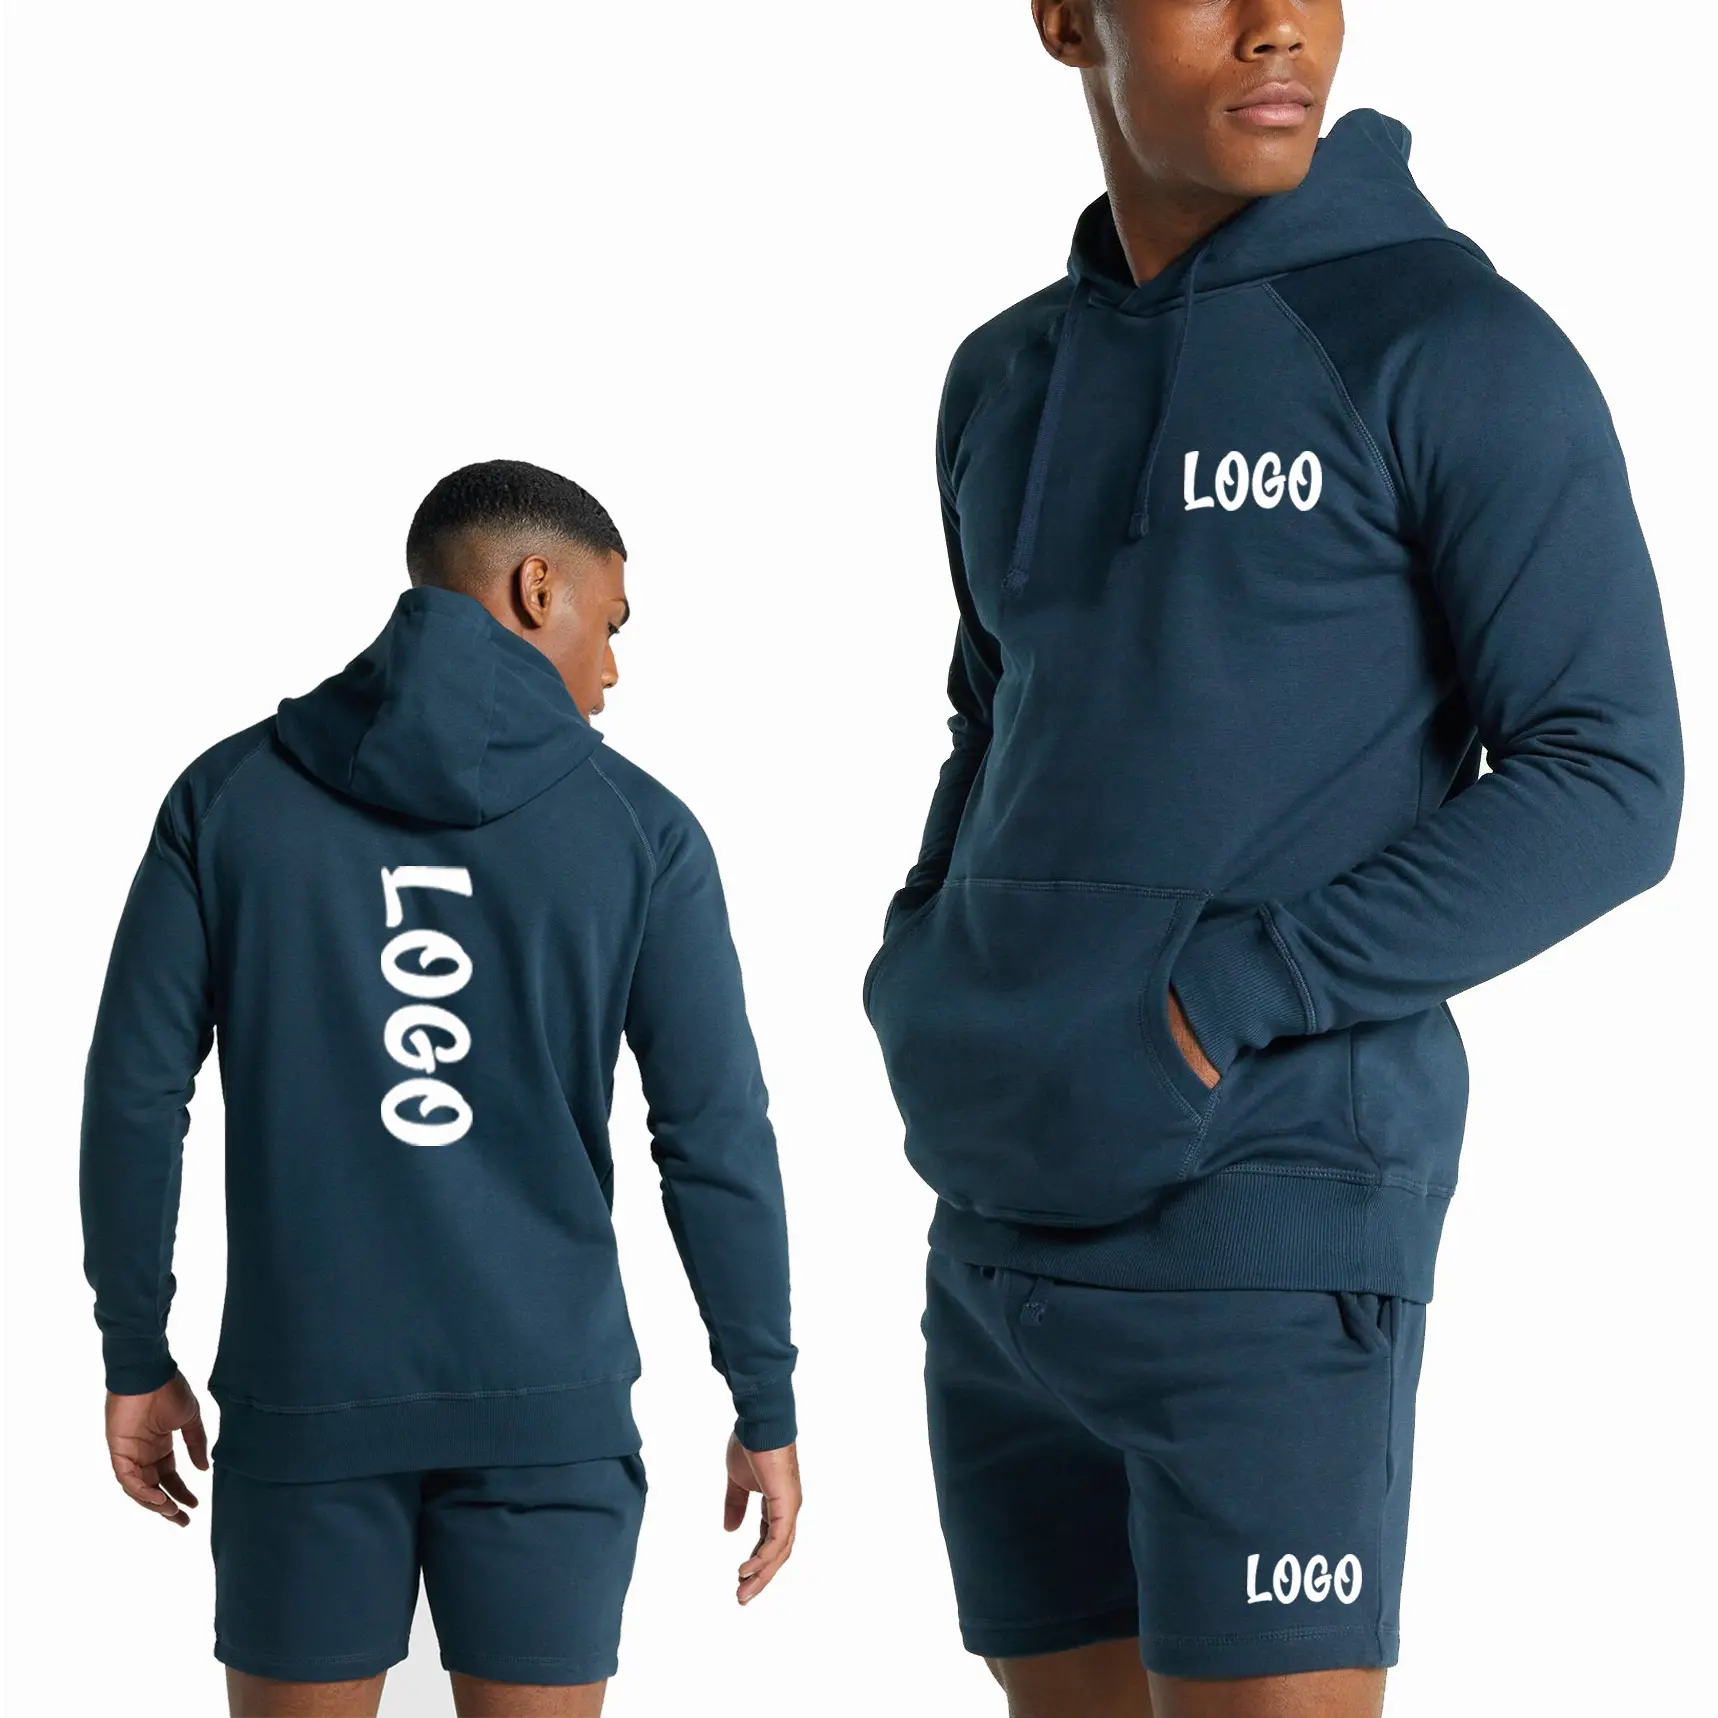 Decheng personnalisé Shorts hommes vêtements coton sweat-shirts Essentials Vintage sweats survêtement à capuche ensemble